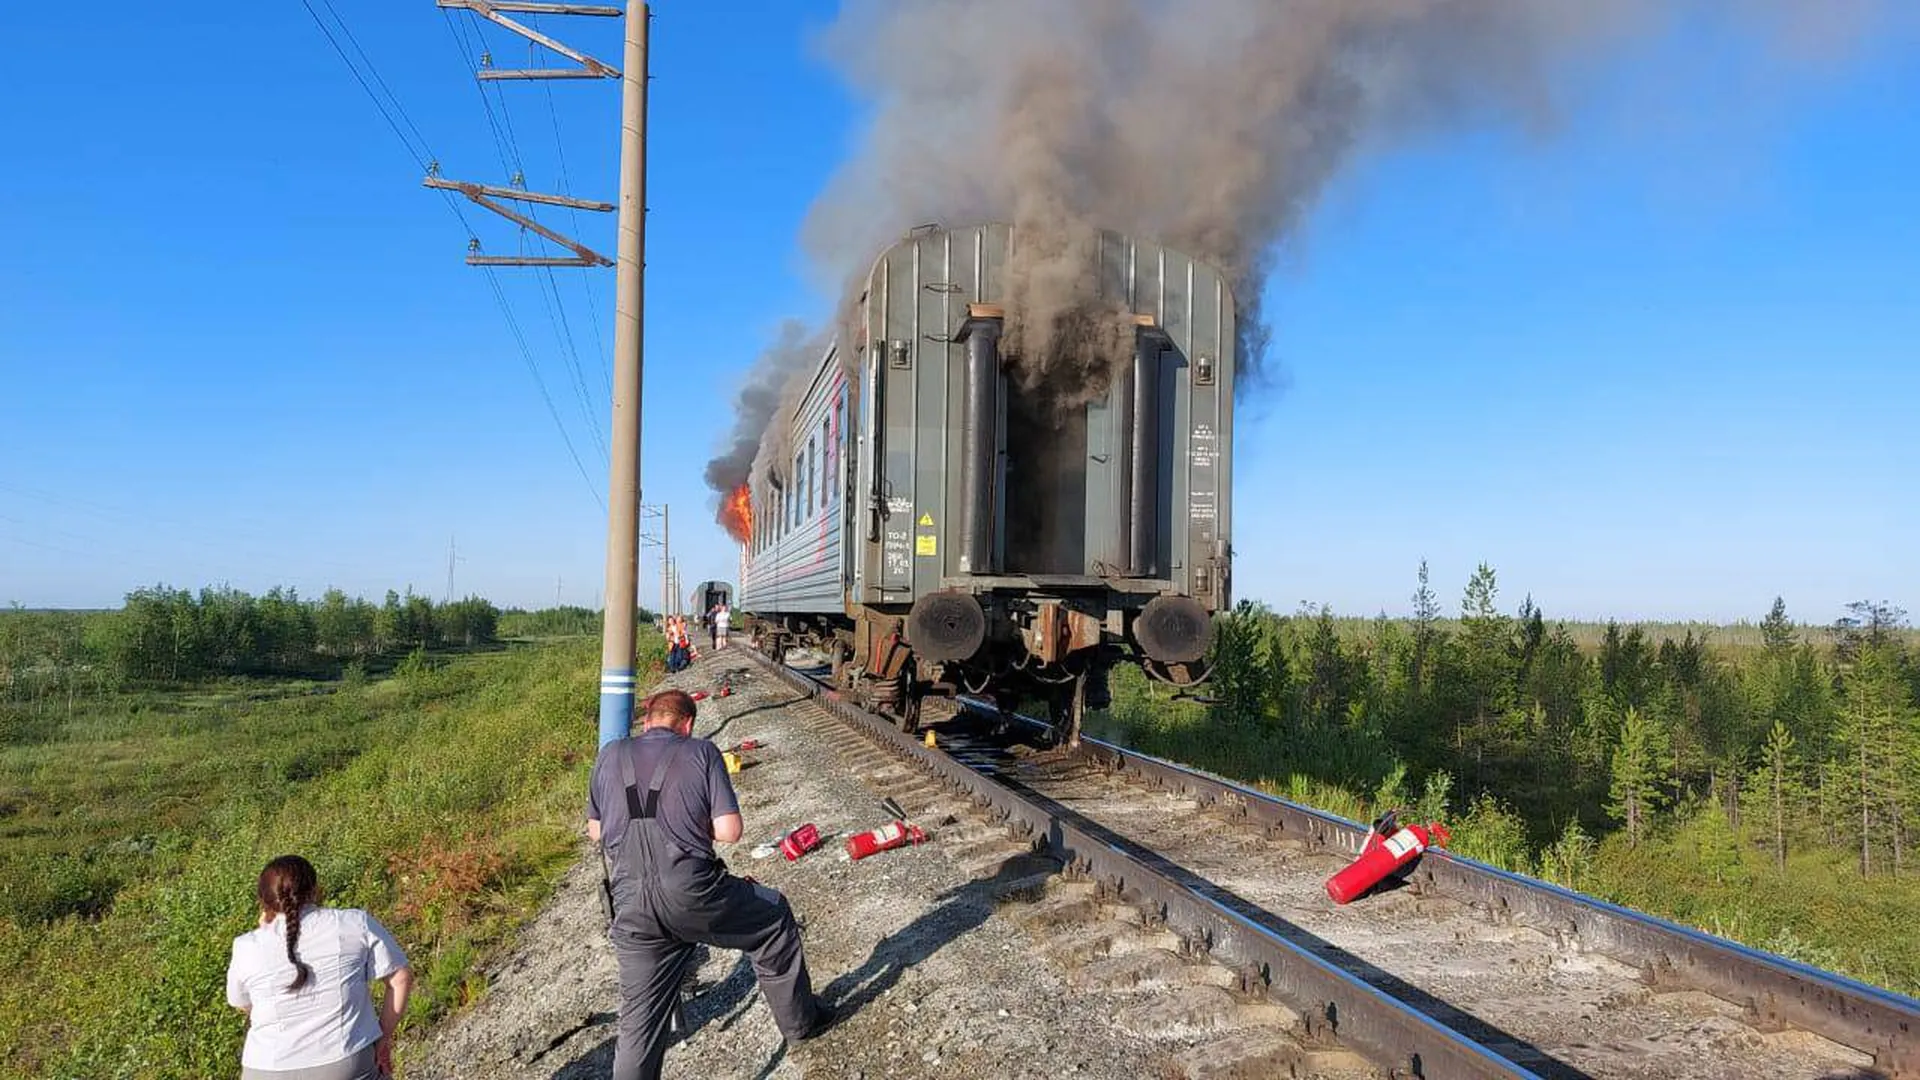 При пожаре в вагоне поезда. Пожар в пассажирском поезде.